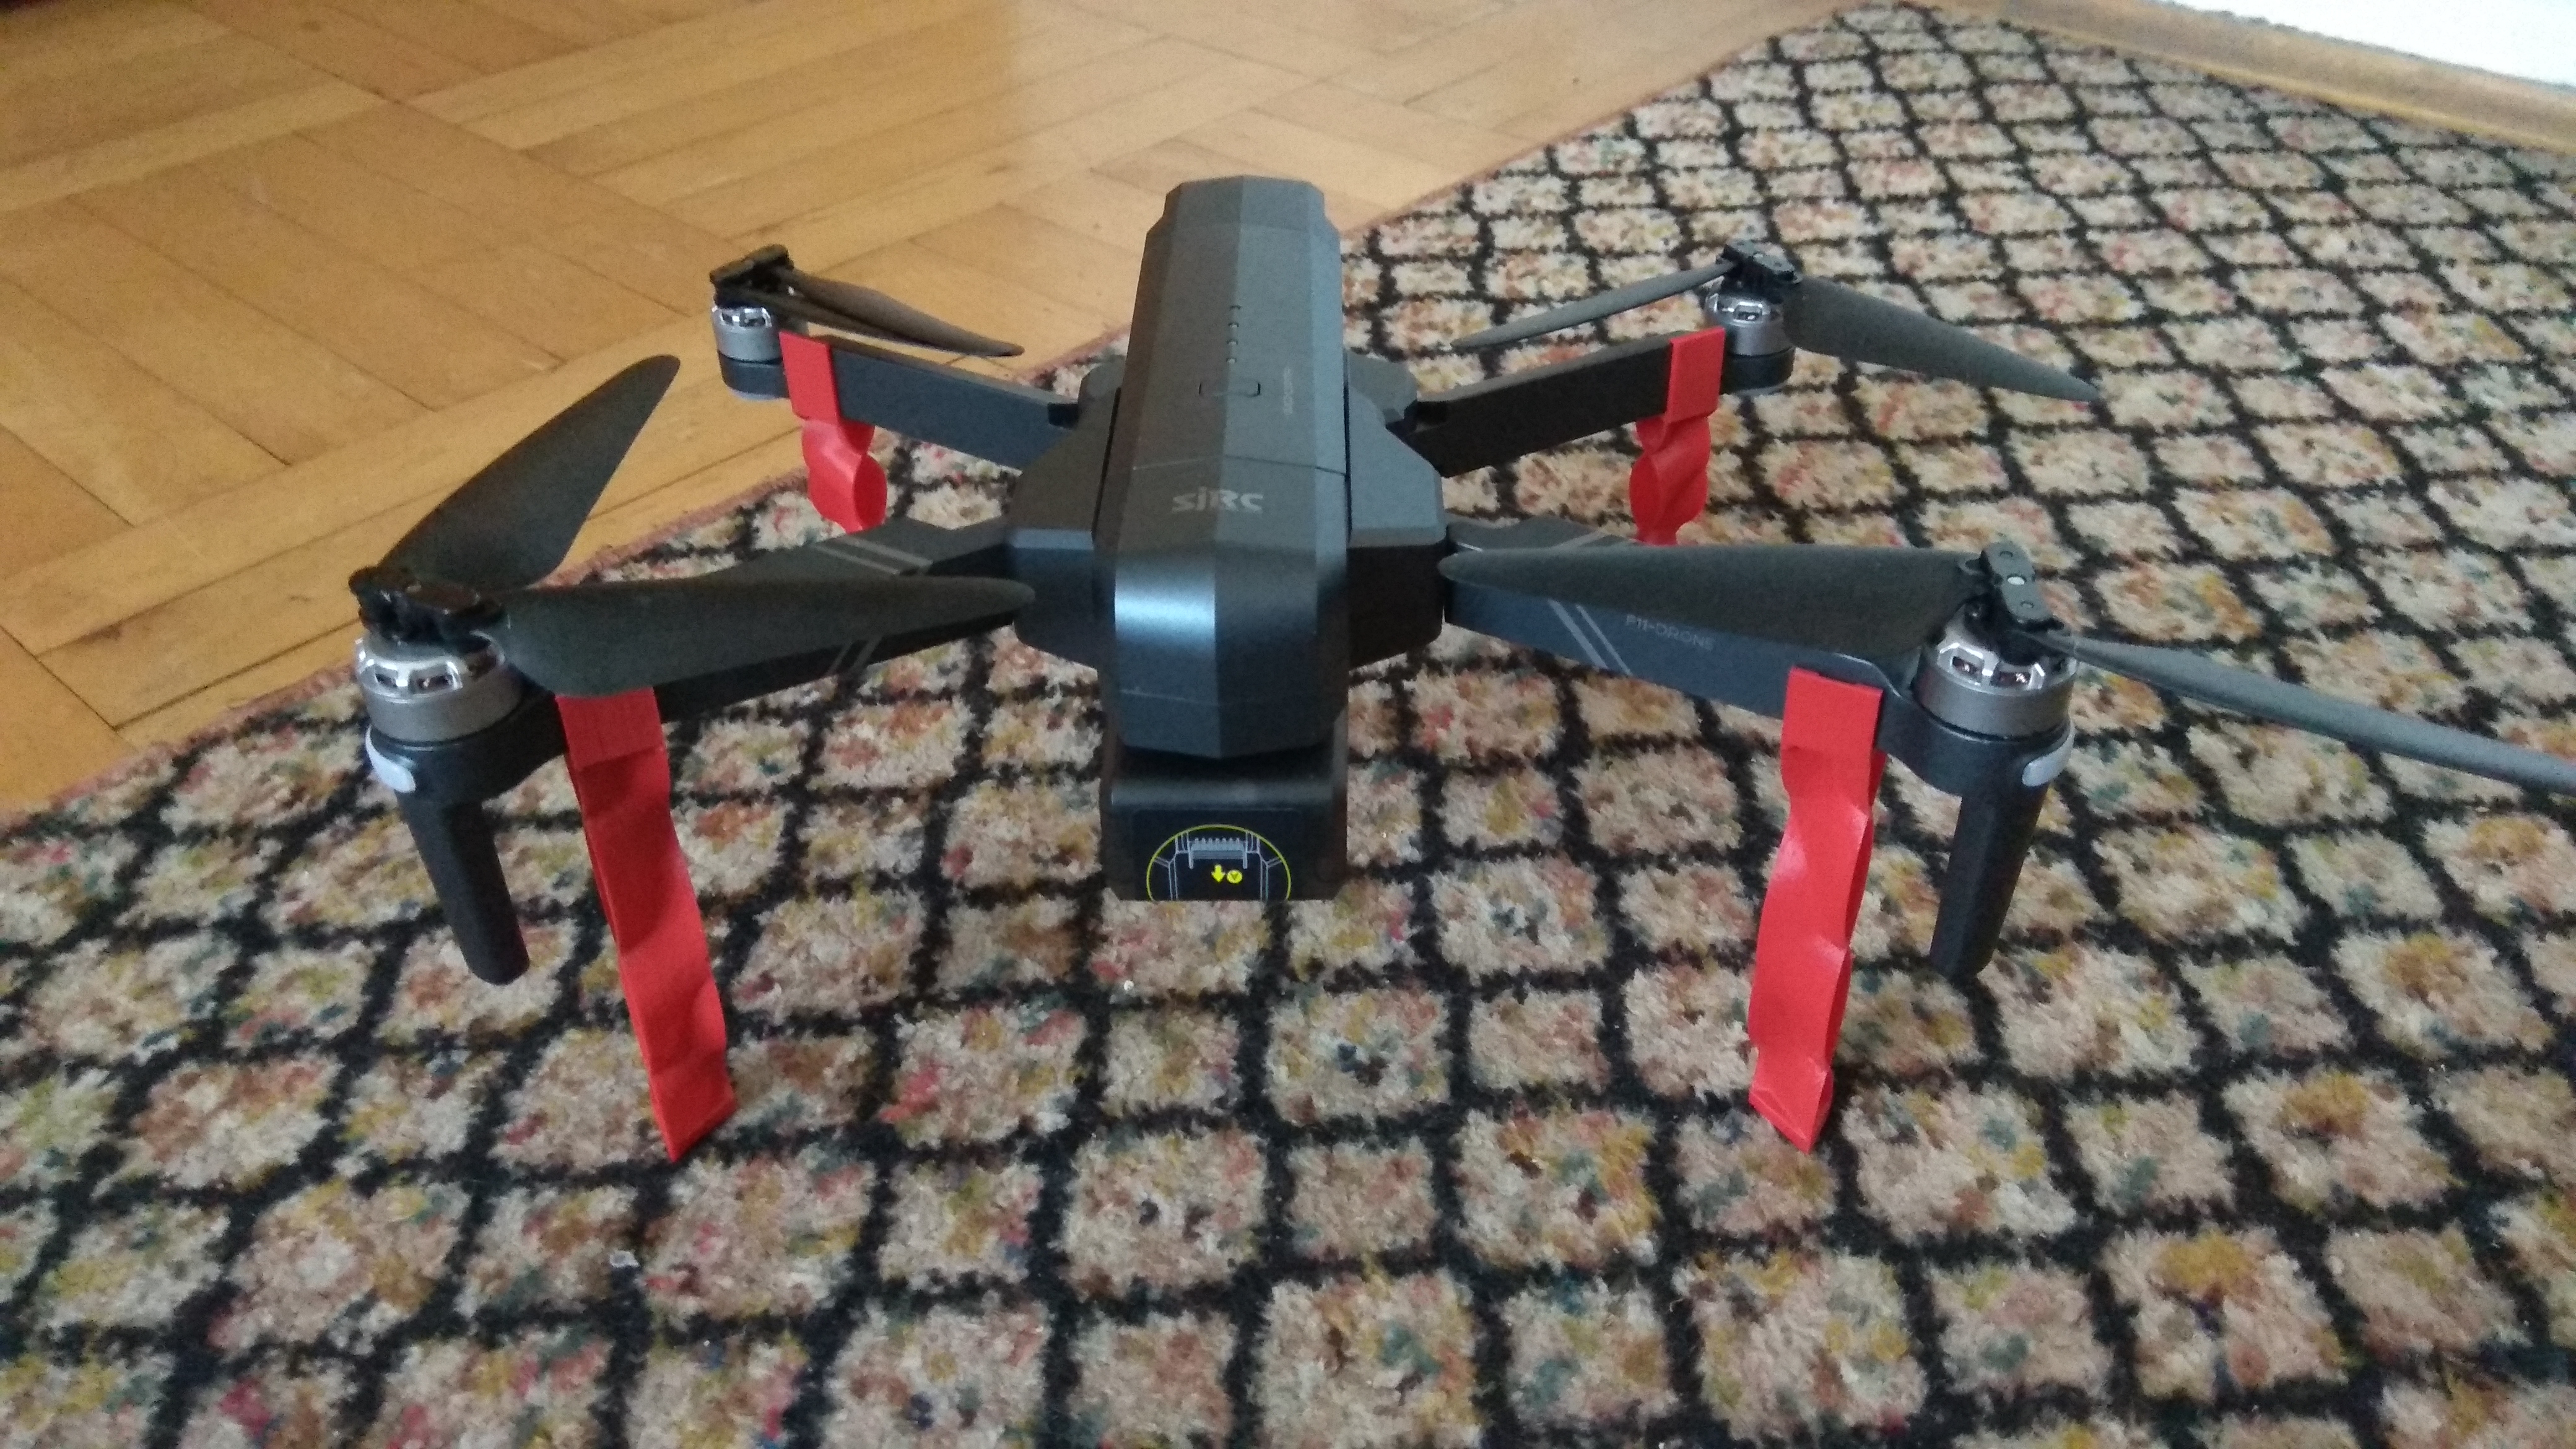 Drone landing gear - SJRC F11 pro